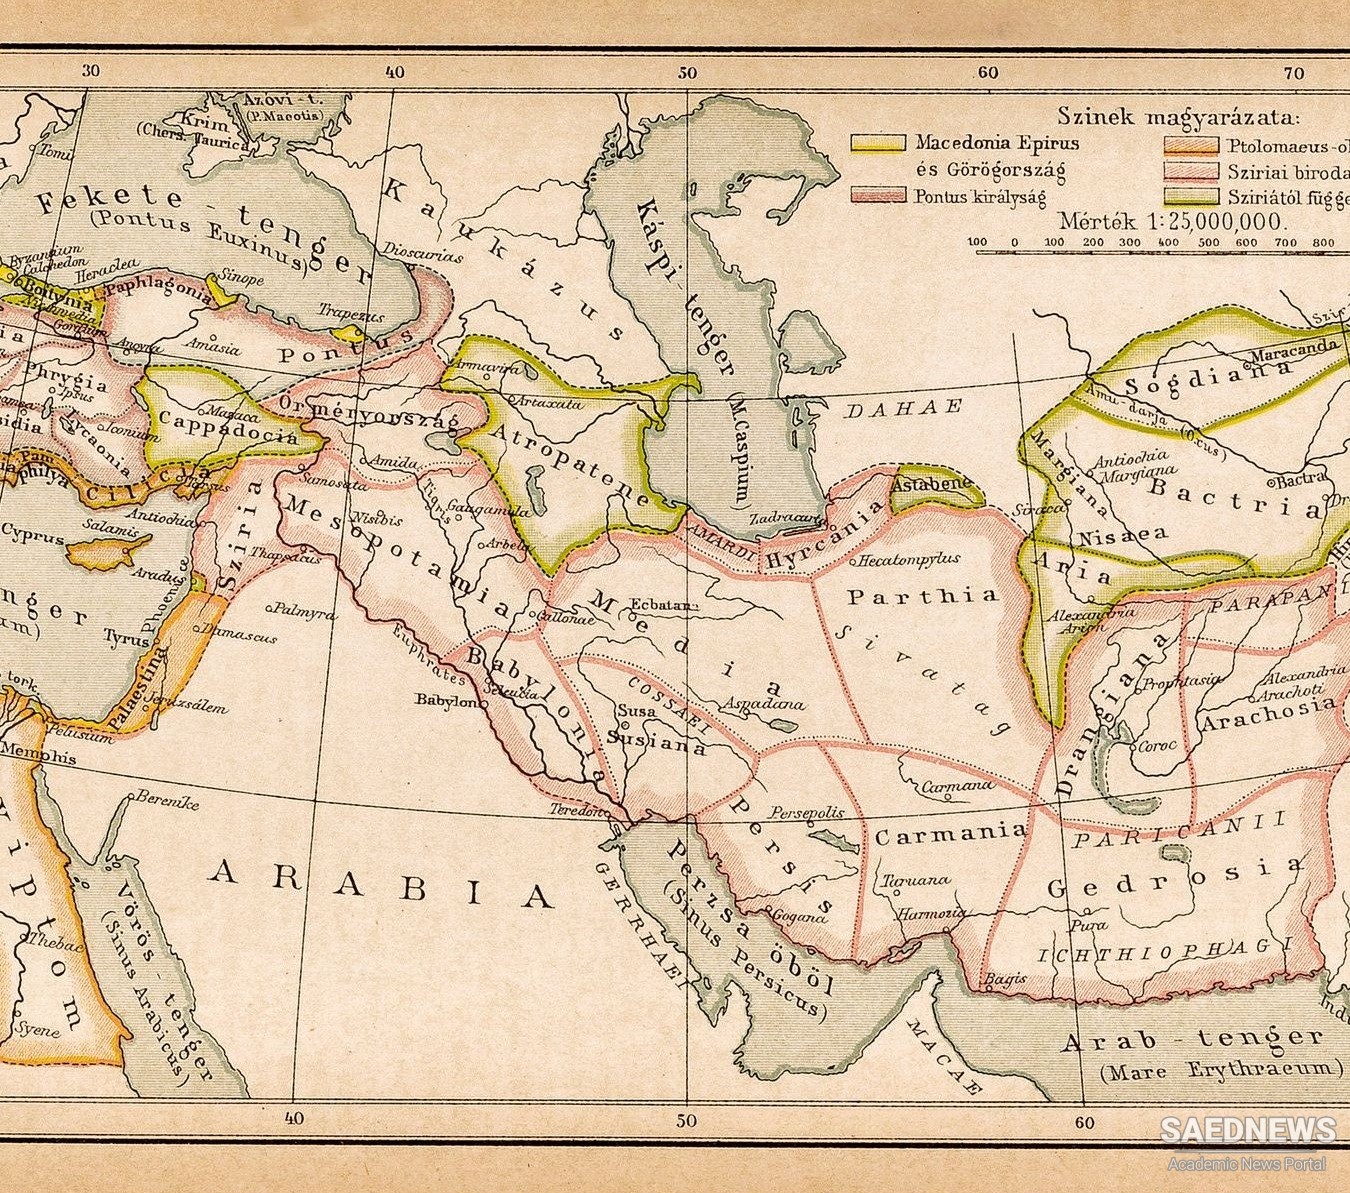 प्राचीन फारसी राज्य का गठन: विश्व महाशक्ति